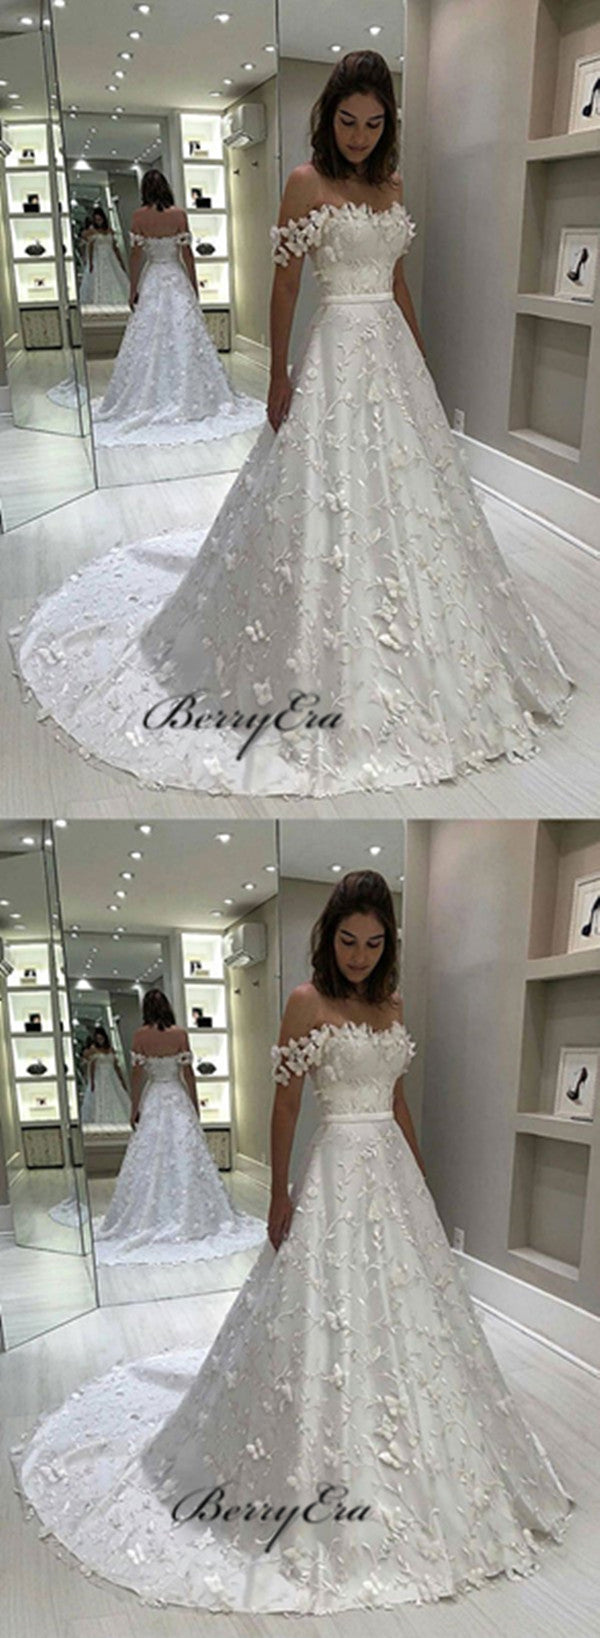 A-line Elegant Lace Applique Wedding Dresses, Popular Off Shoulder Wedding Dresses 2019